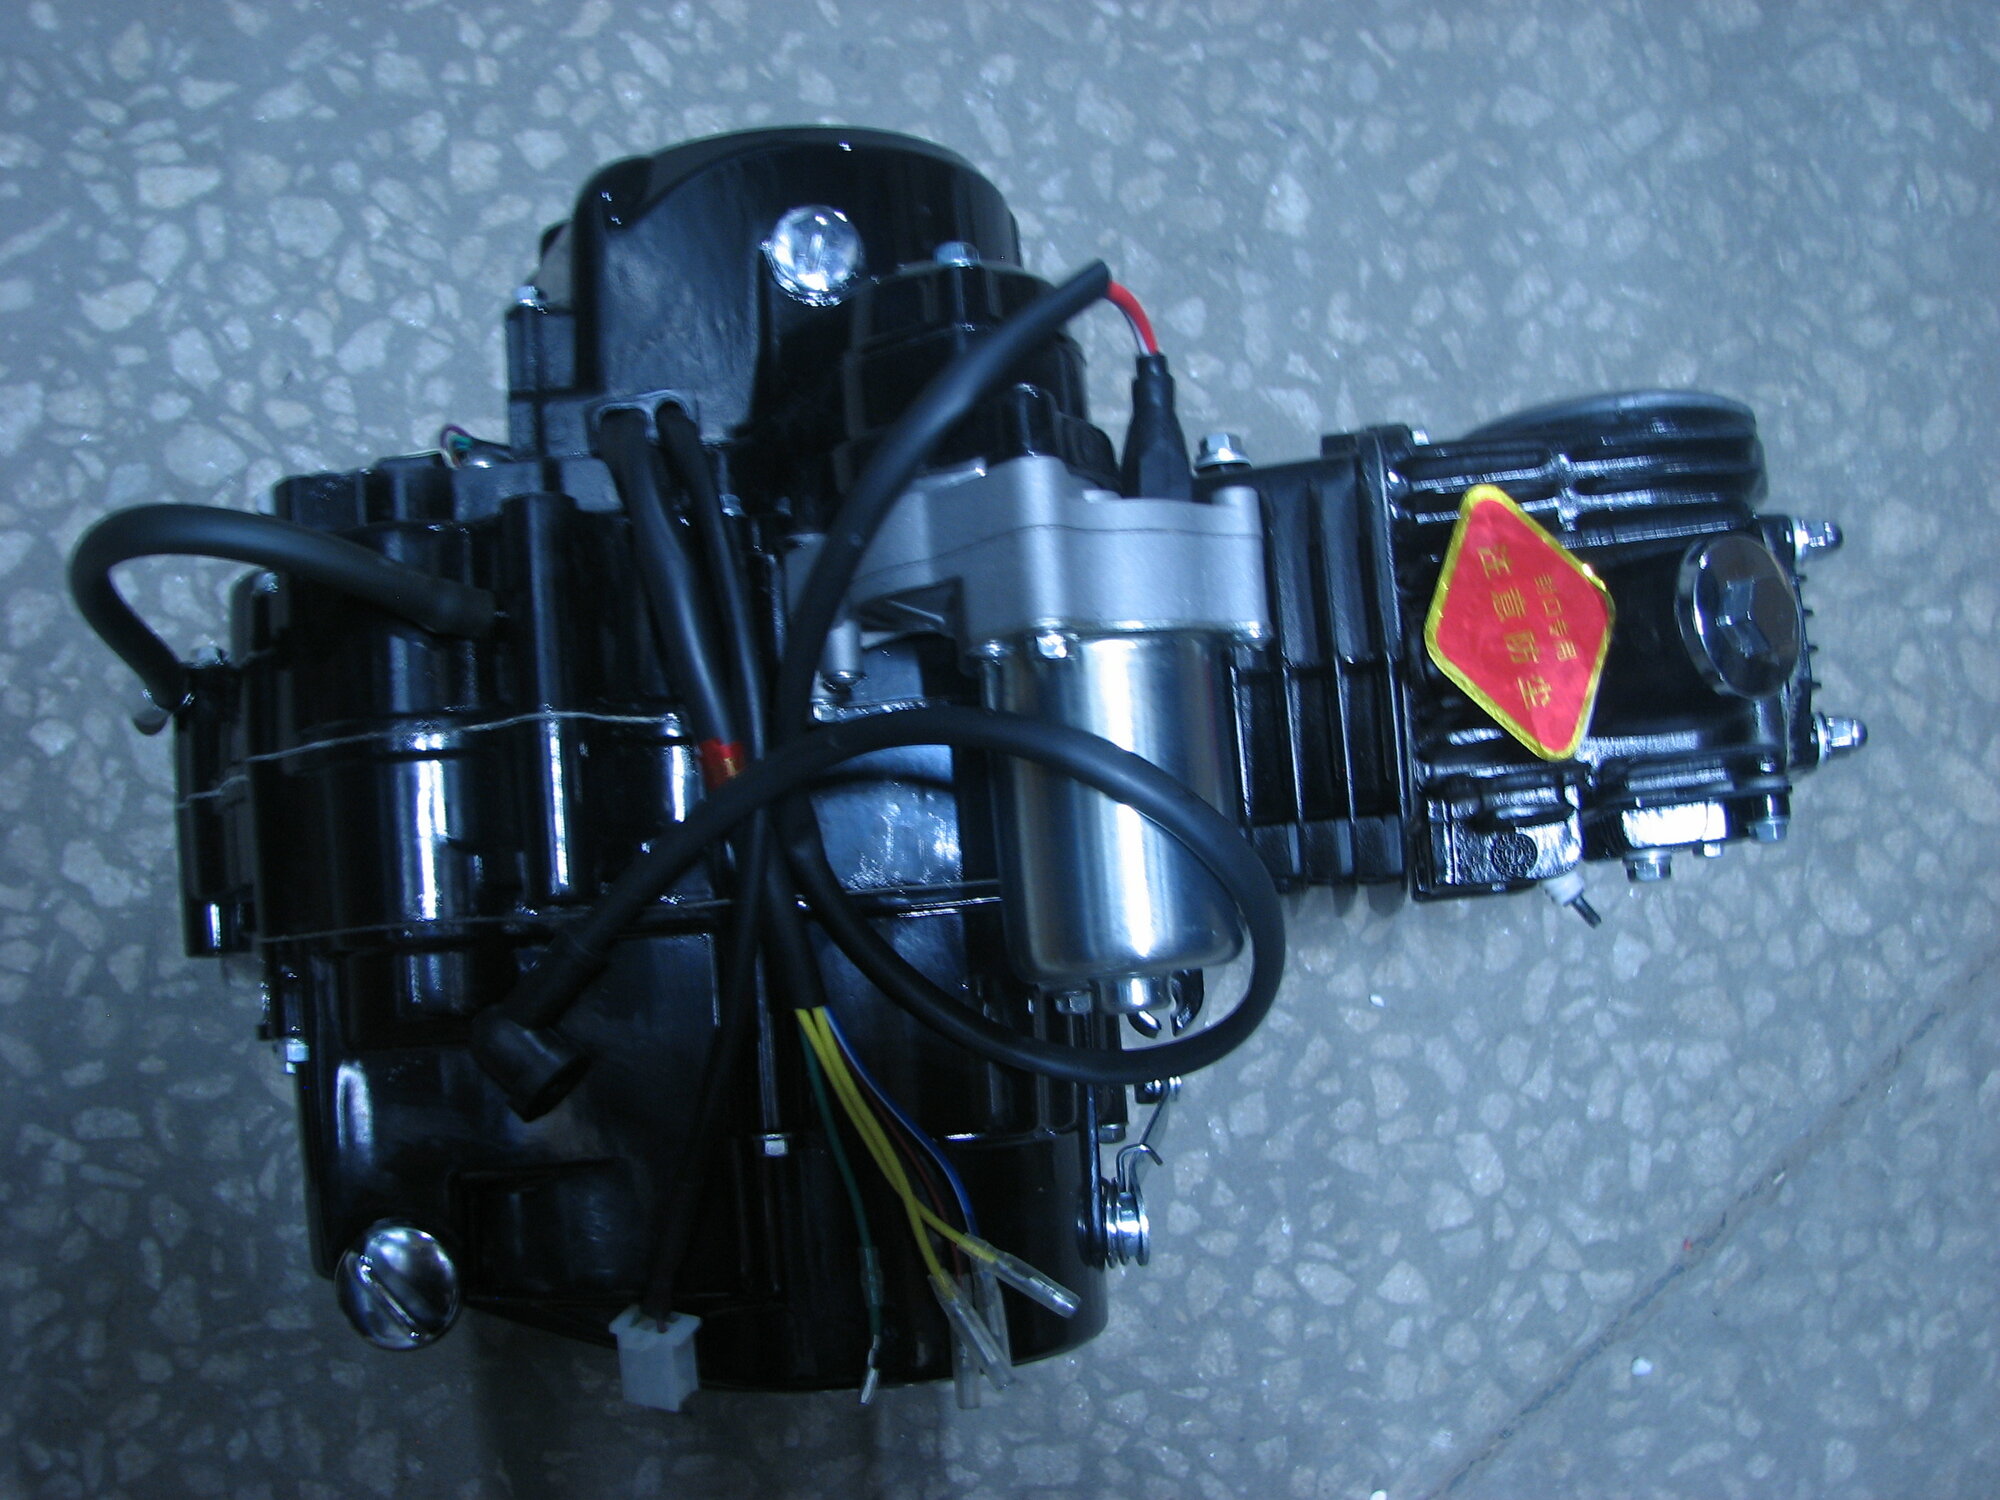 Двигатель 4т. 125 см3 (С120, 1P52) альфа горизонтальный, тюнинг, круговая, педаль двойная